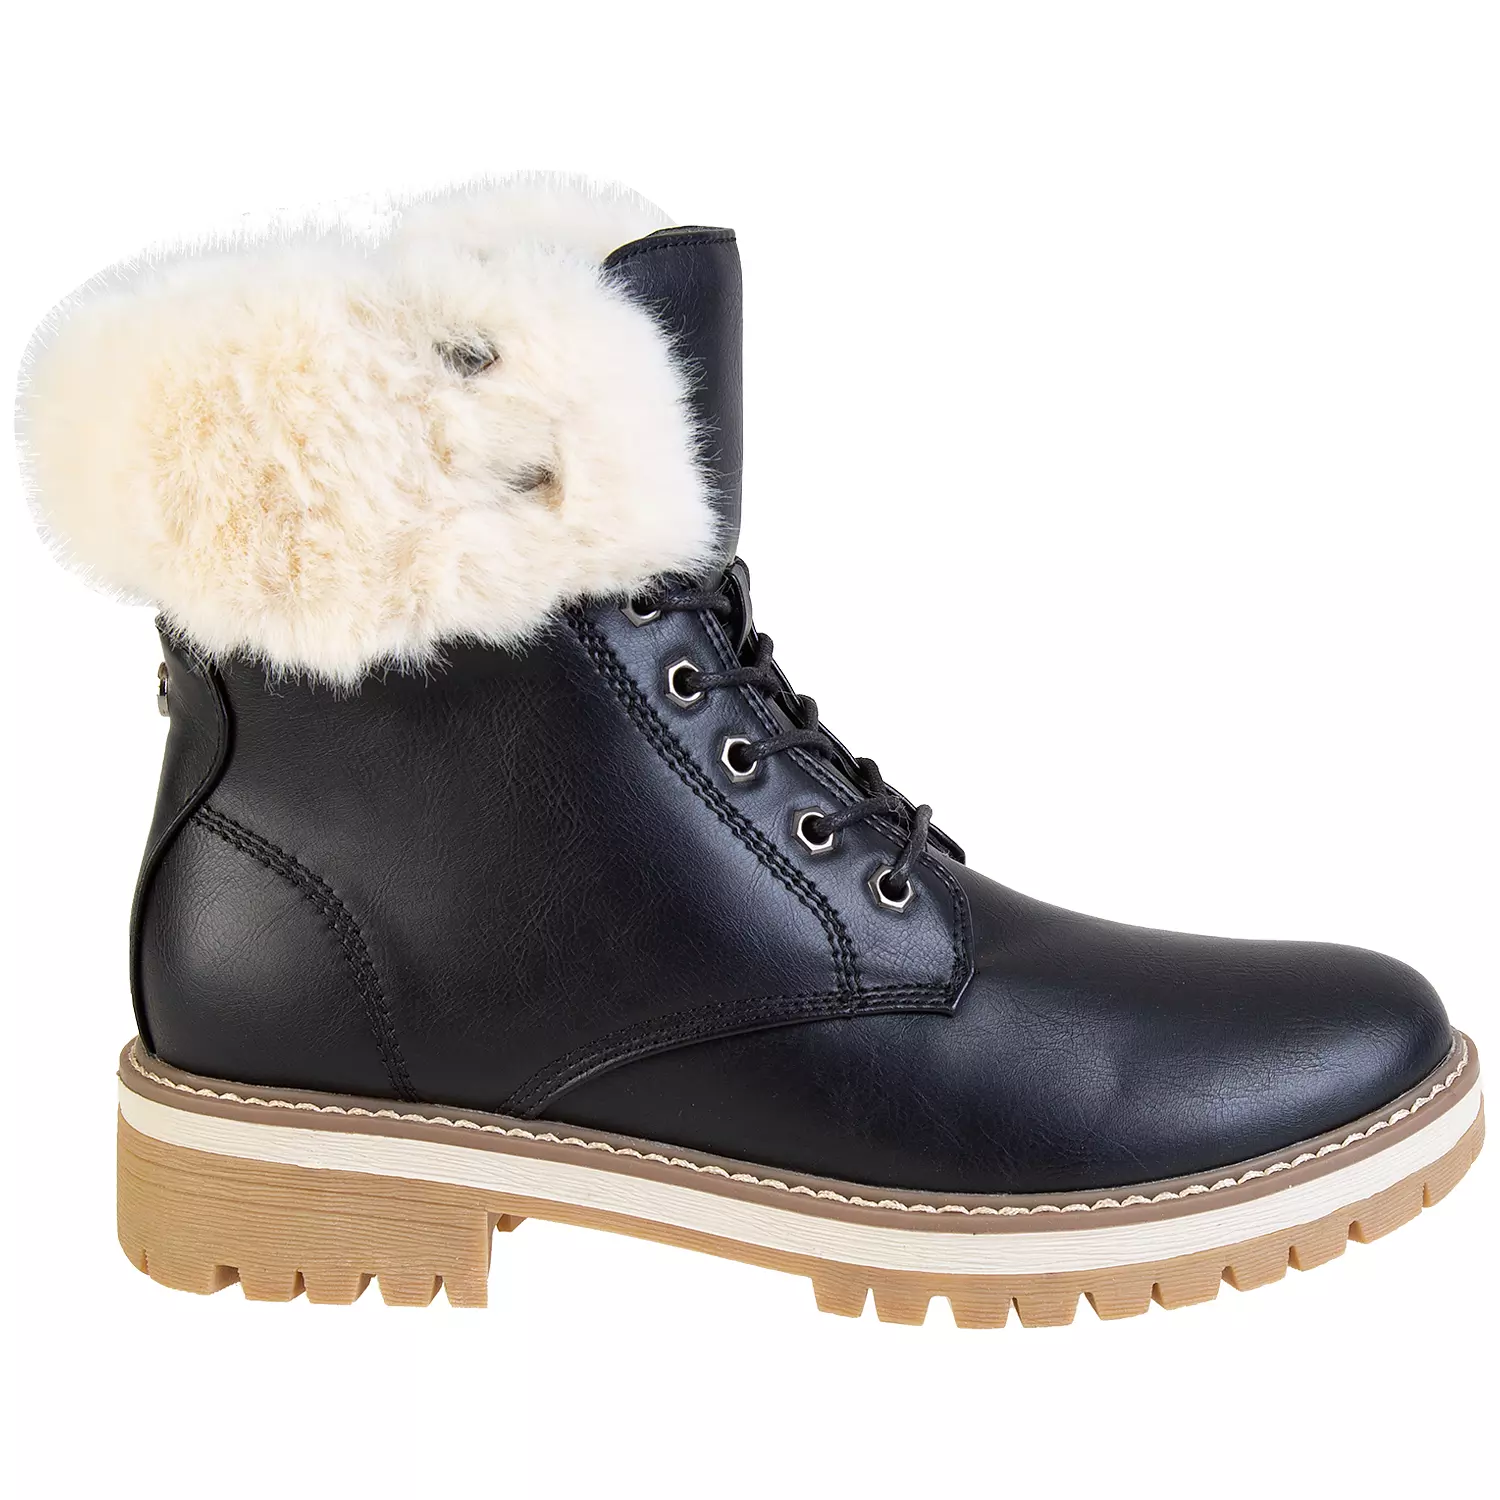 Lace-up faux fur trim fashion combat boots, black, size 9